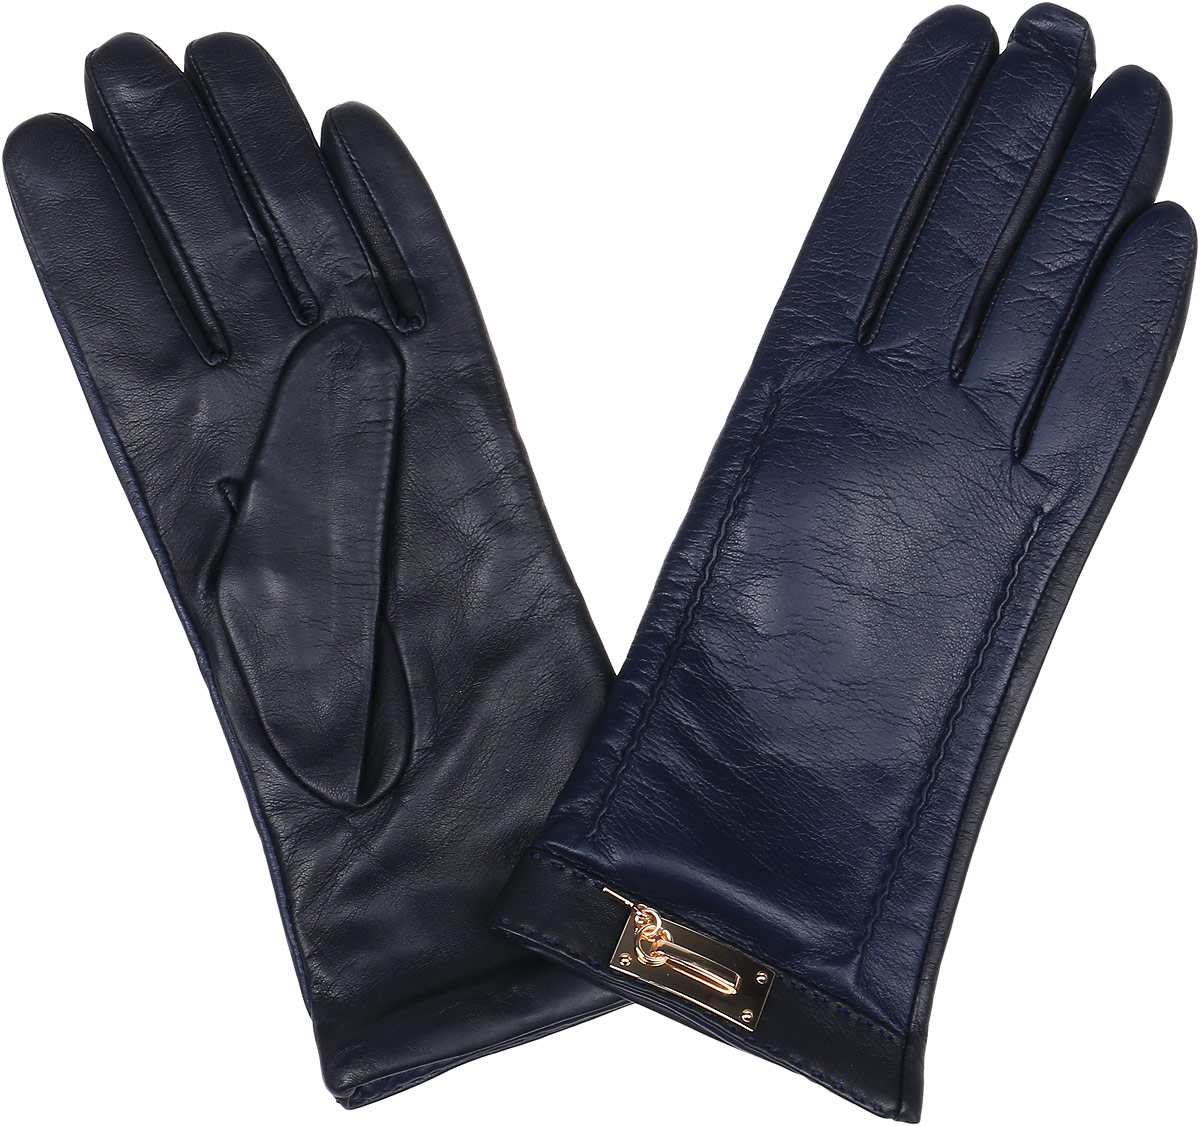 Перчатки женские Fabretti, цвет: черный, темно-синий. 9.73-11. Размер 8